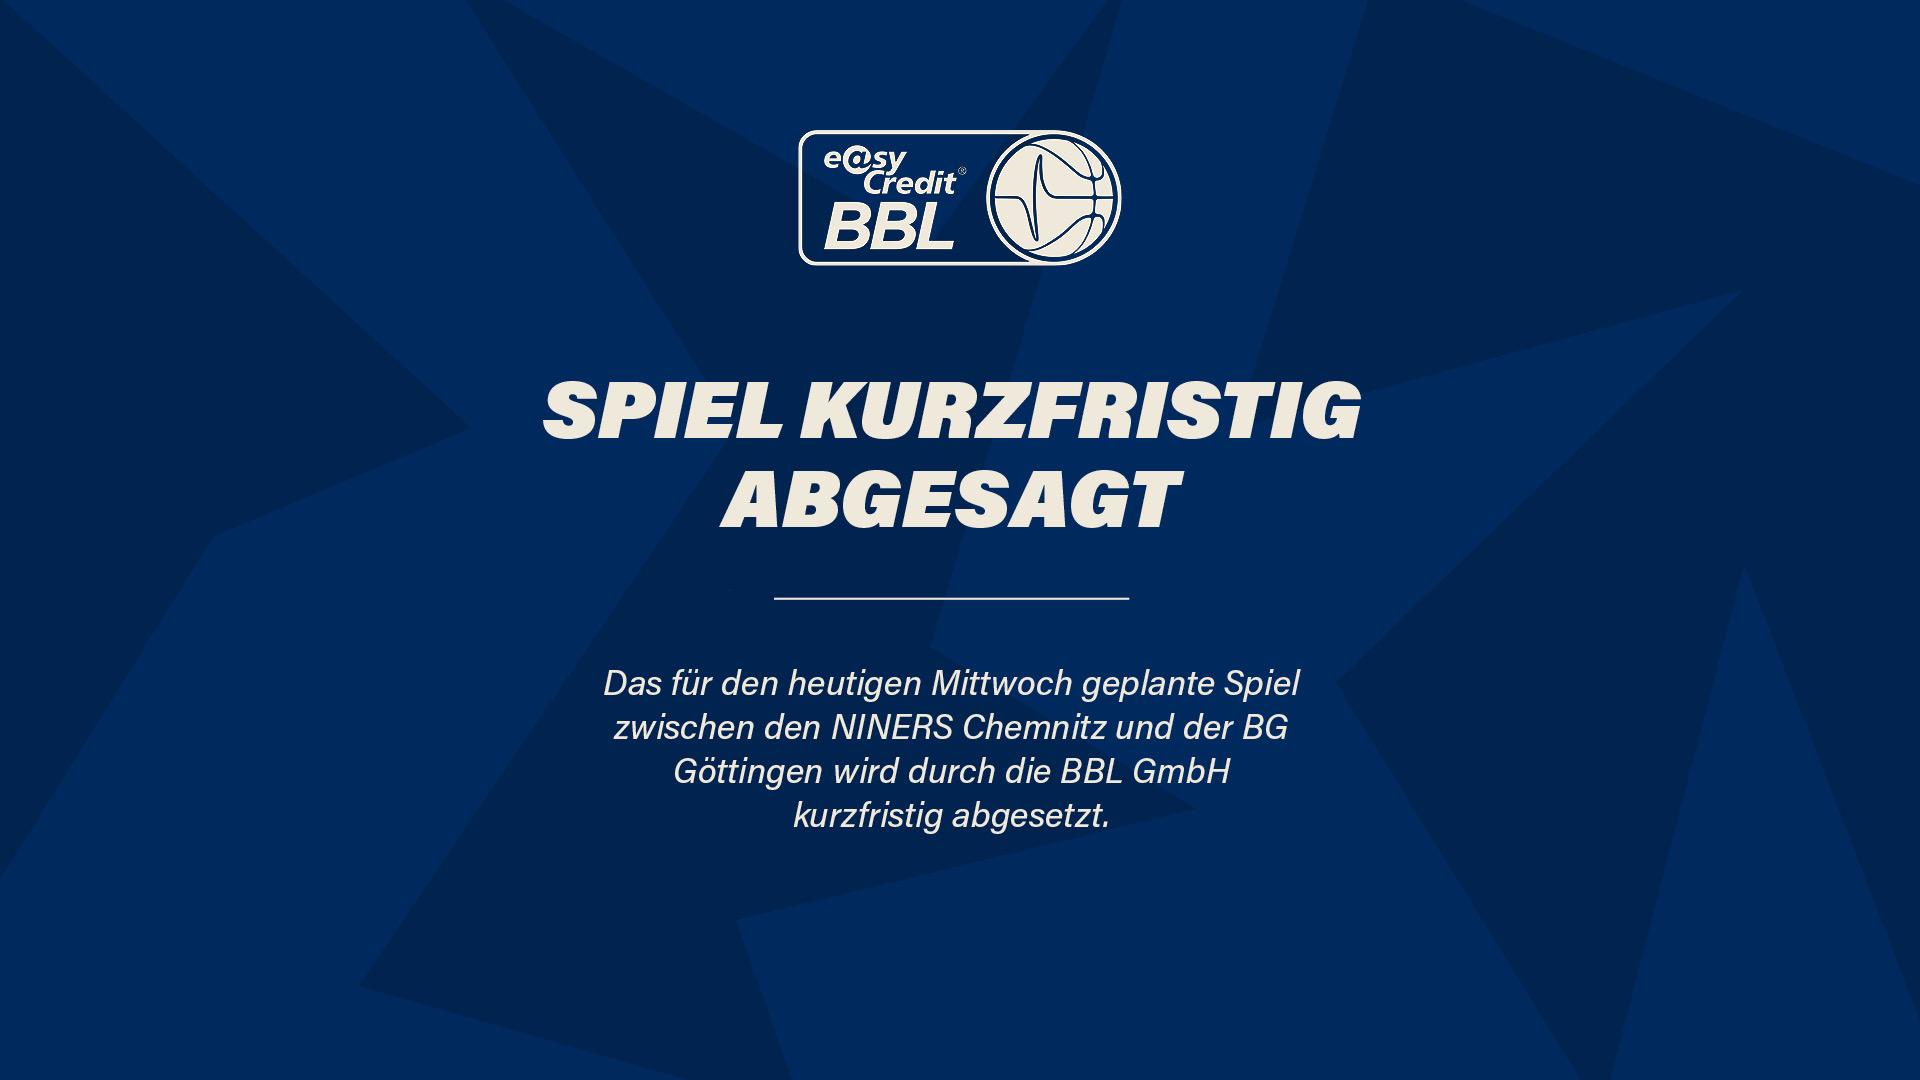 Das für den heutigen Mittwoch geplante Spiel zwischen den NINERS Chemnitz und BG Göttingen wird durch die BBL GmbH kurzfristig verlegt.